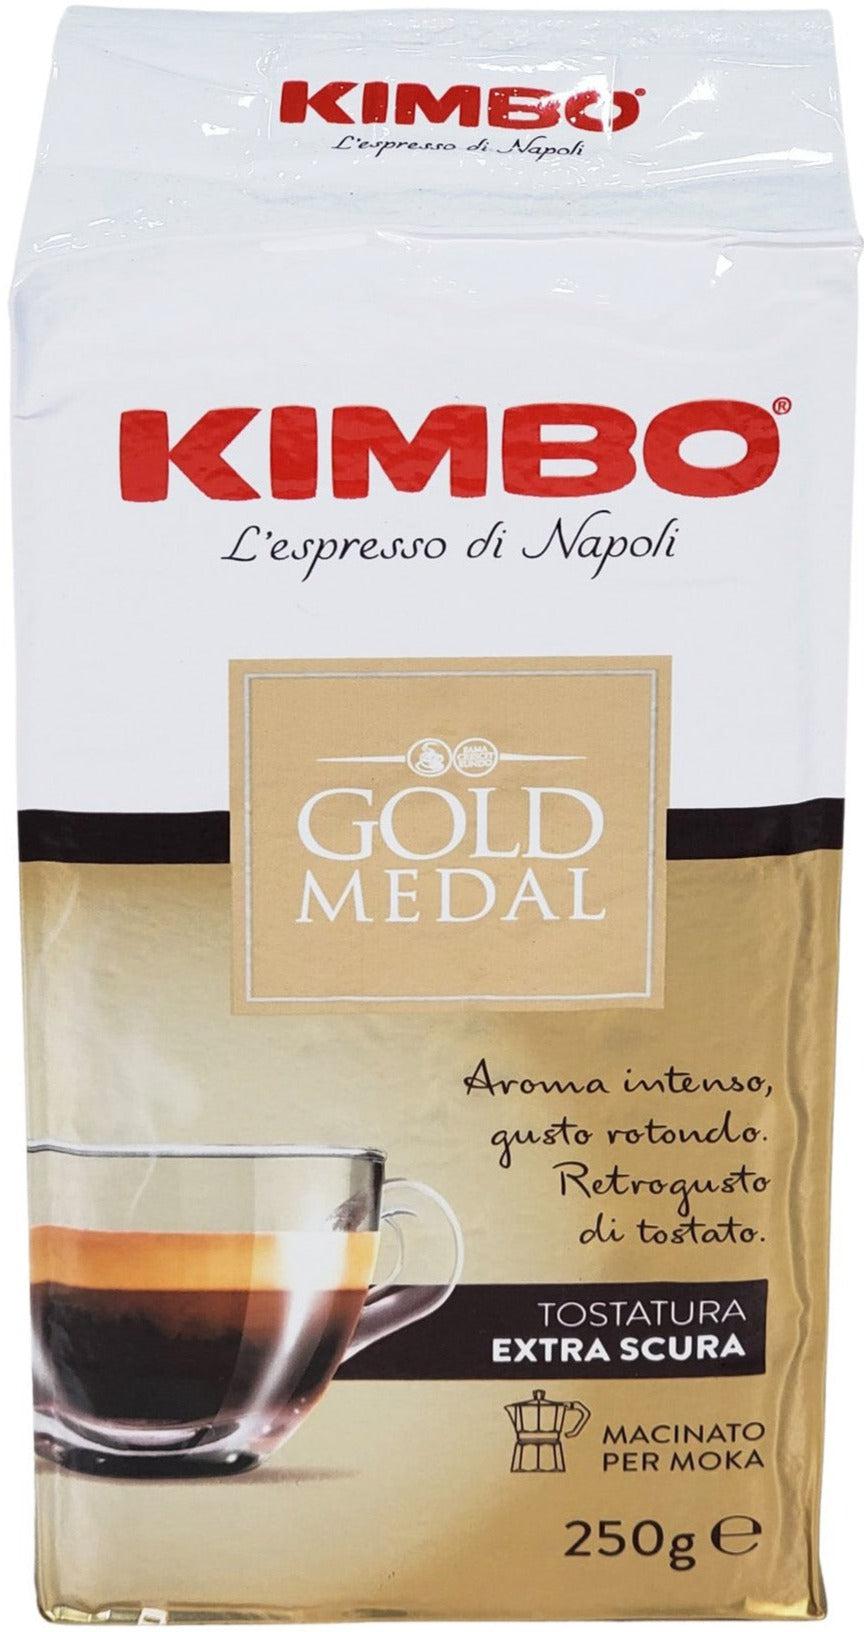 CAFE EN GRAINS Kimbo Grains De Cafe Extra Cream Arabica 50